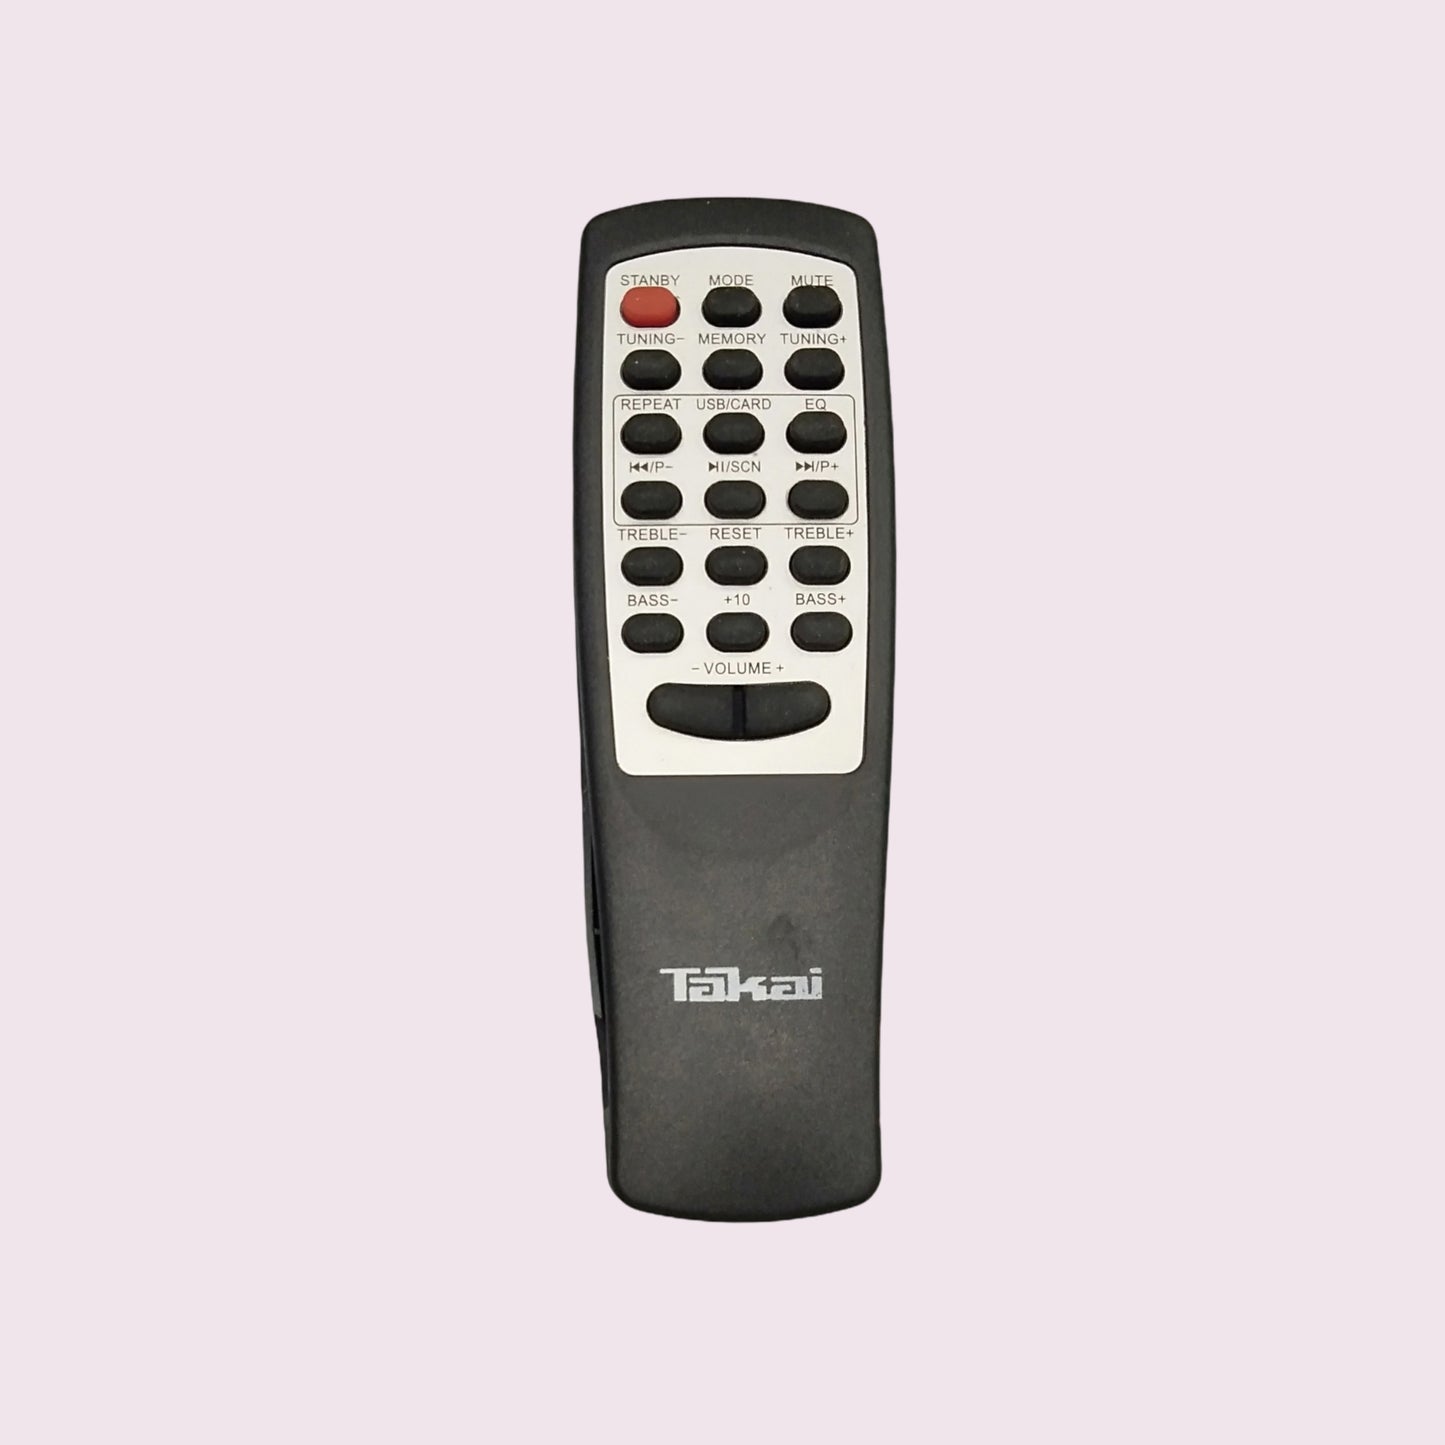 Takai Home Theater Remote Control * Compatible*High Sensitivity (HM29) - Faritha